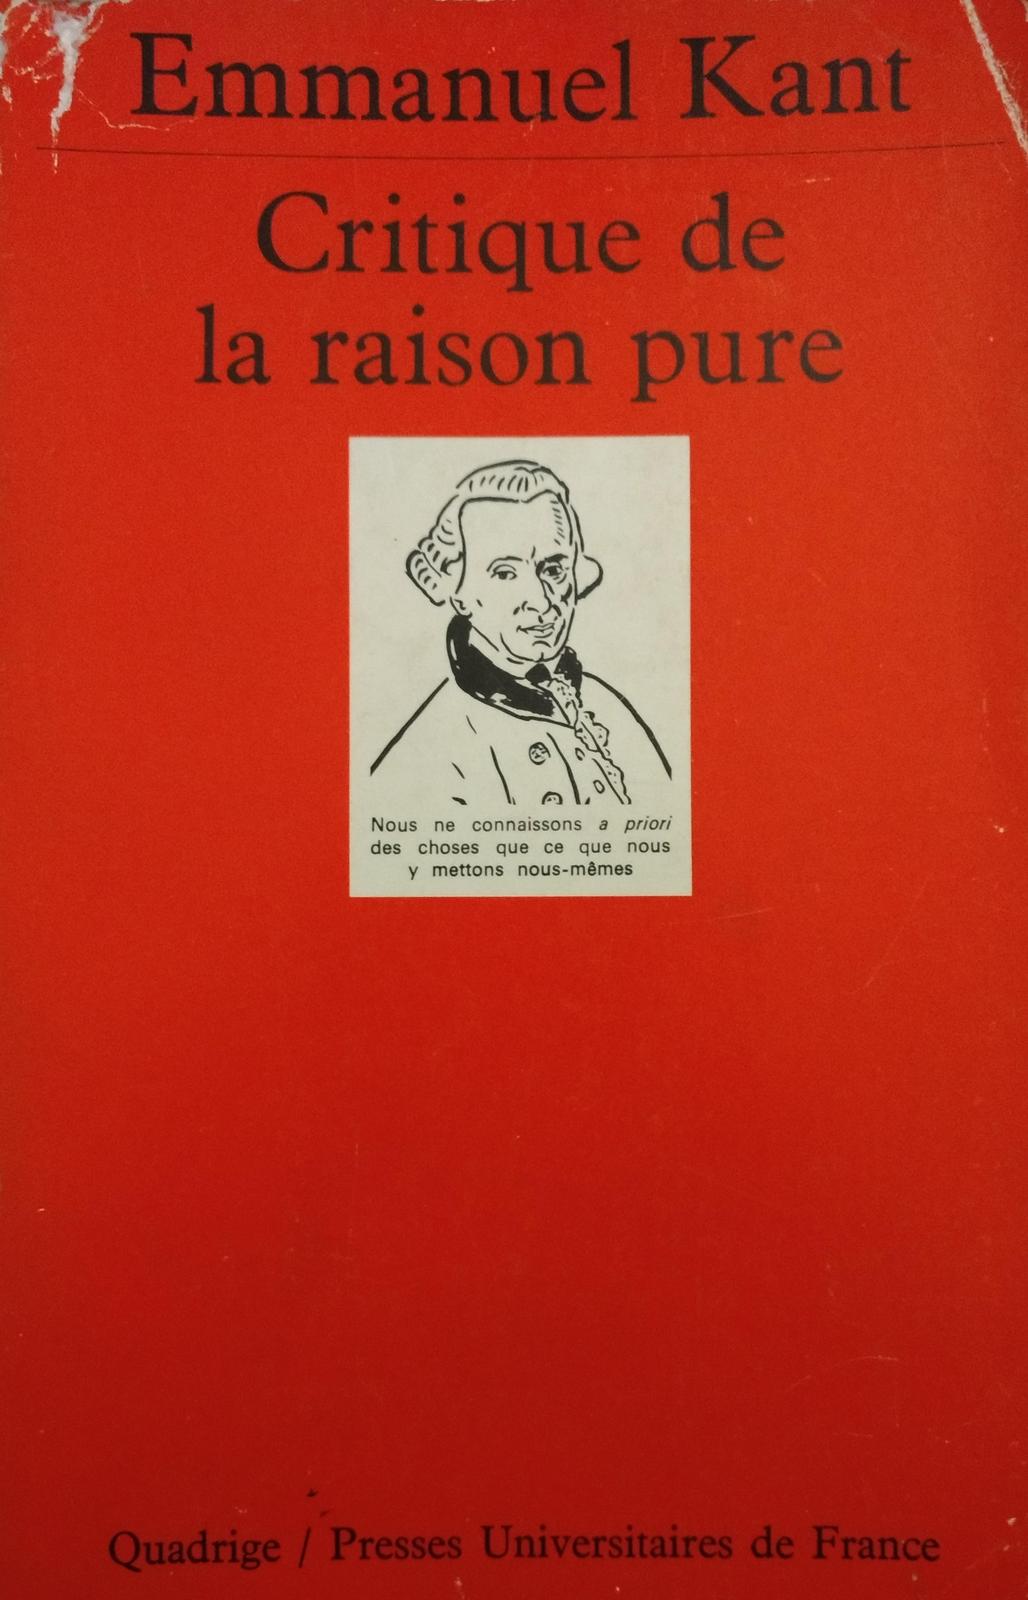 Immanuel Kant: Critique de la raison pure (French language, 1986, Presses Universitaires de France)